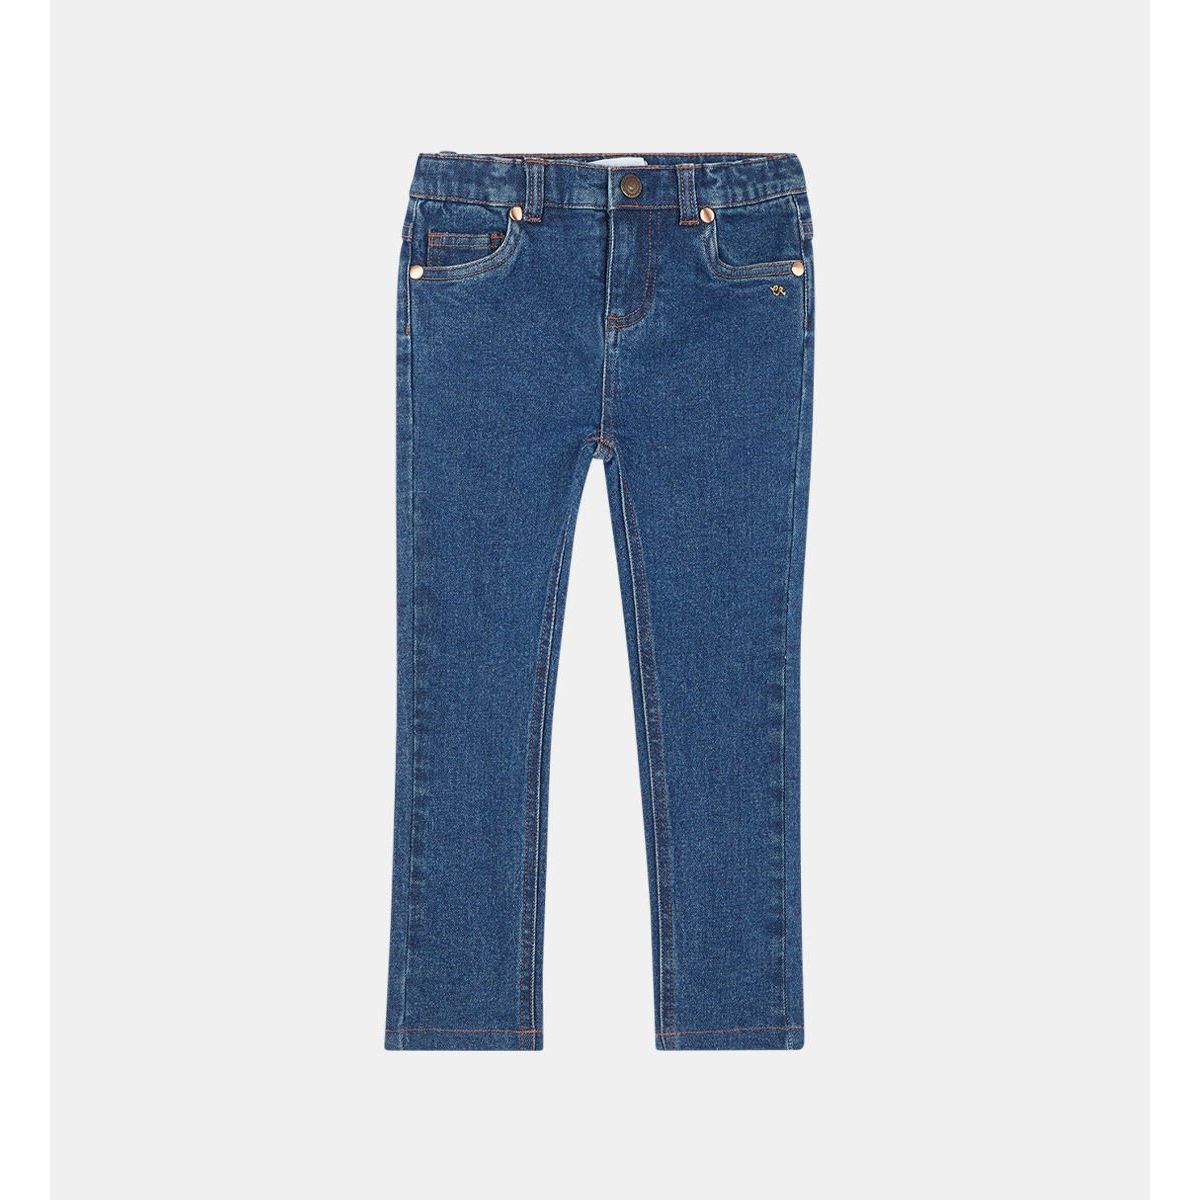 Galeries Lafayette Fille Vêtements Pantalons & Jeans Jeans Skinny Jean slim Macha délavé coton bio Bleu 